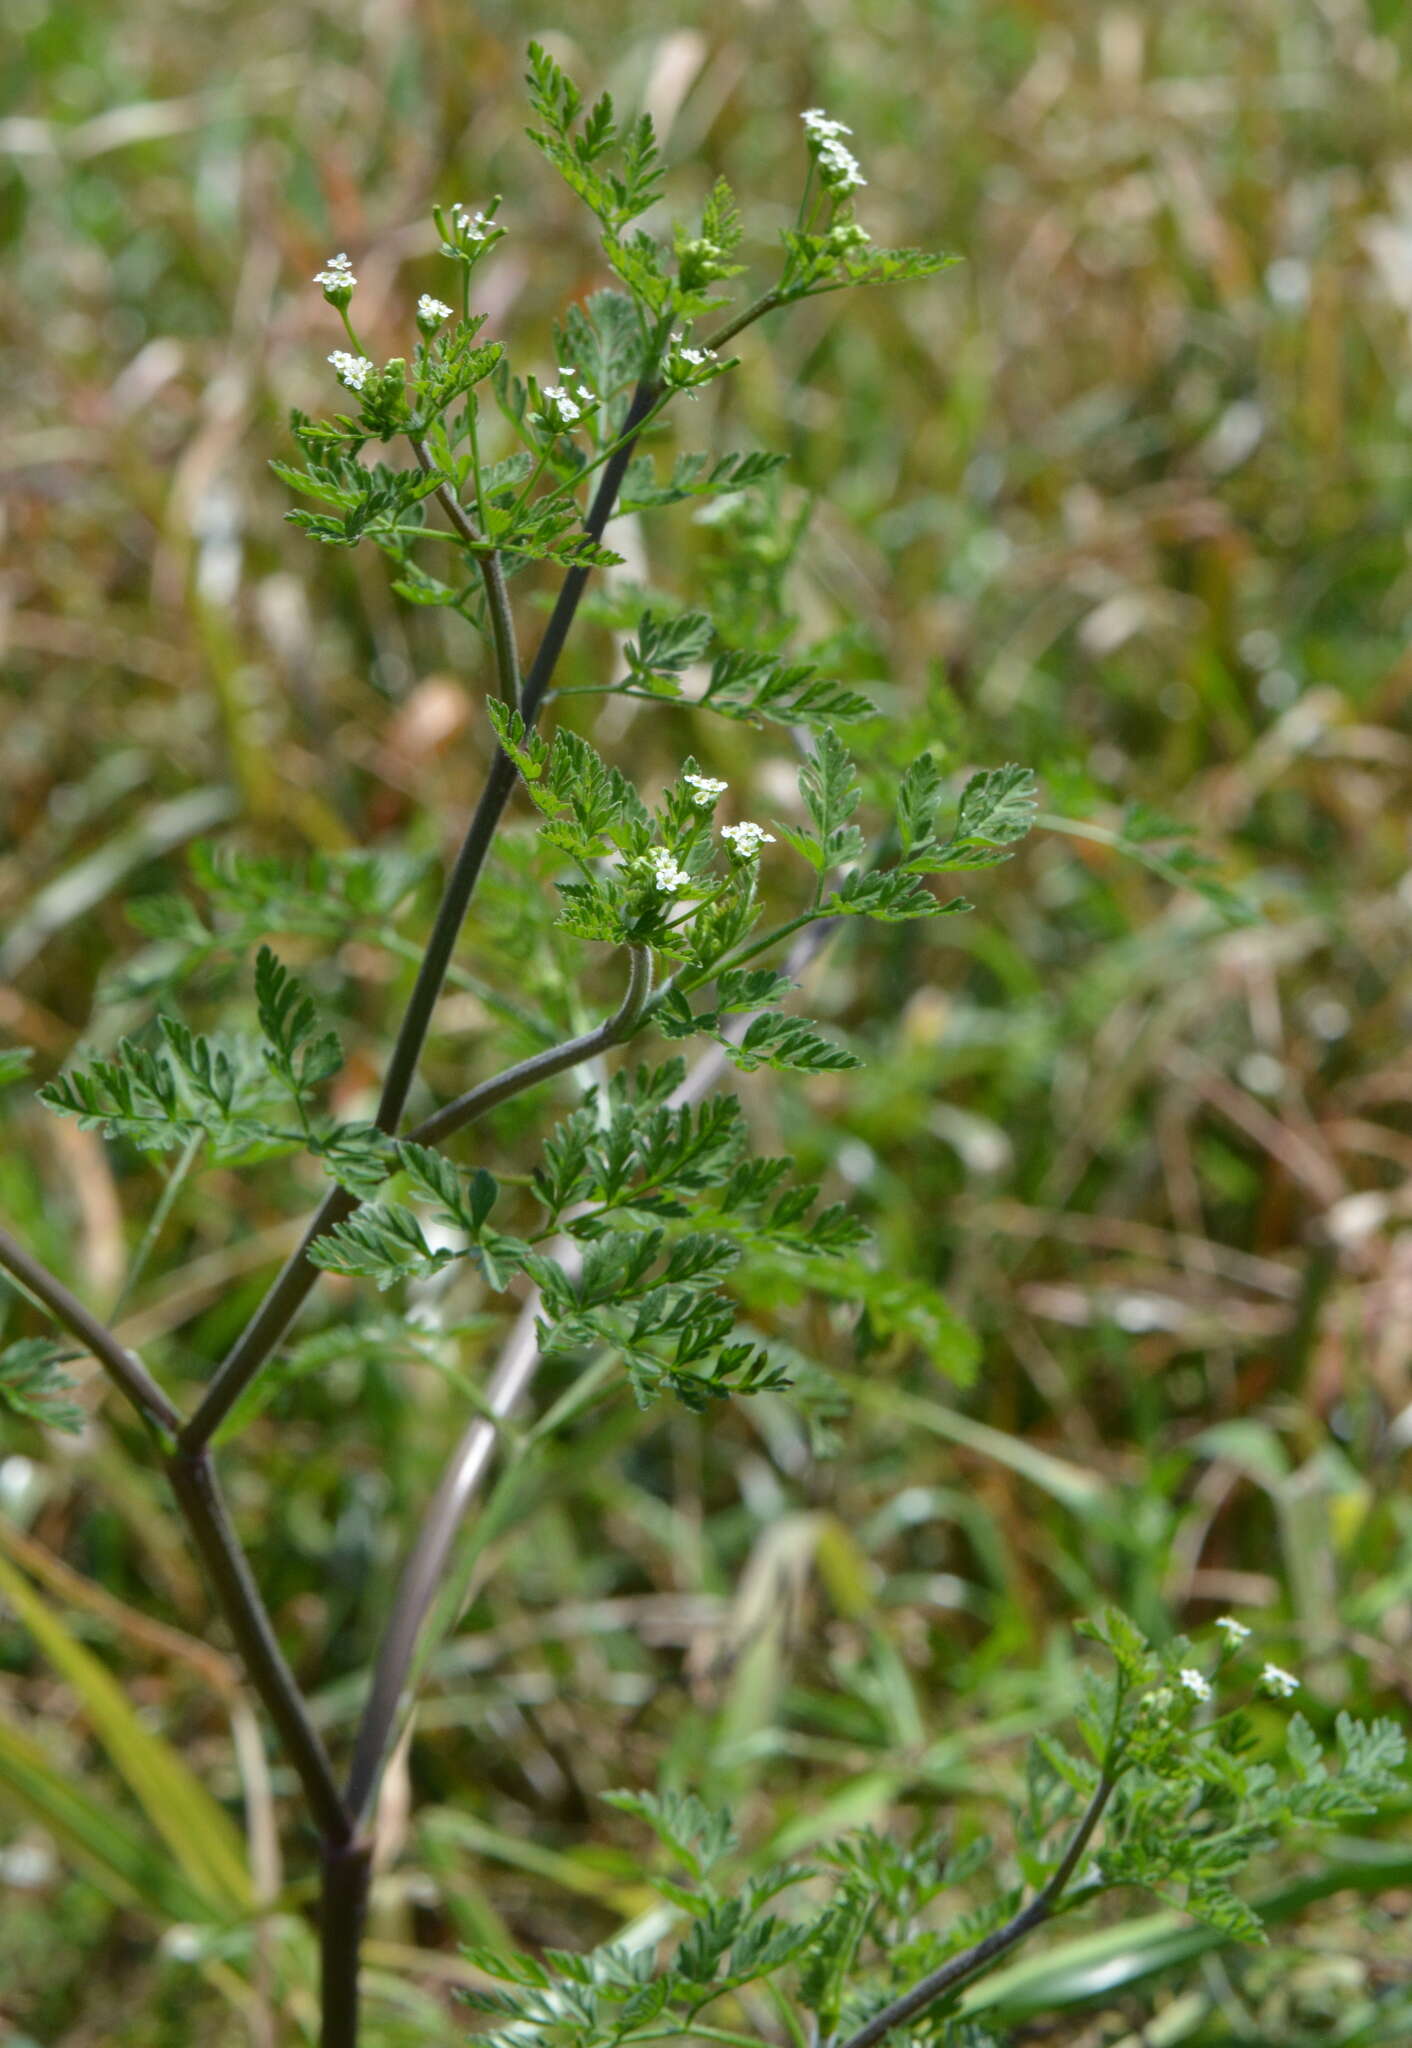 Image of Chaerophyllum tainturieri var. tainturieri